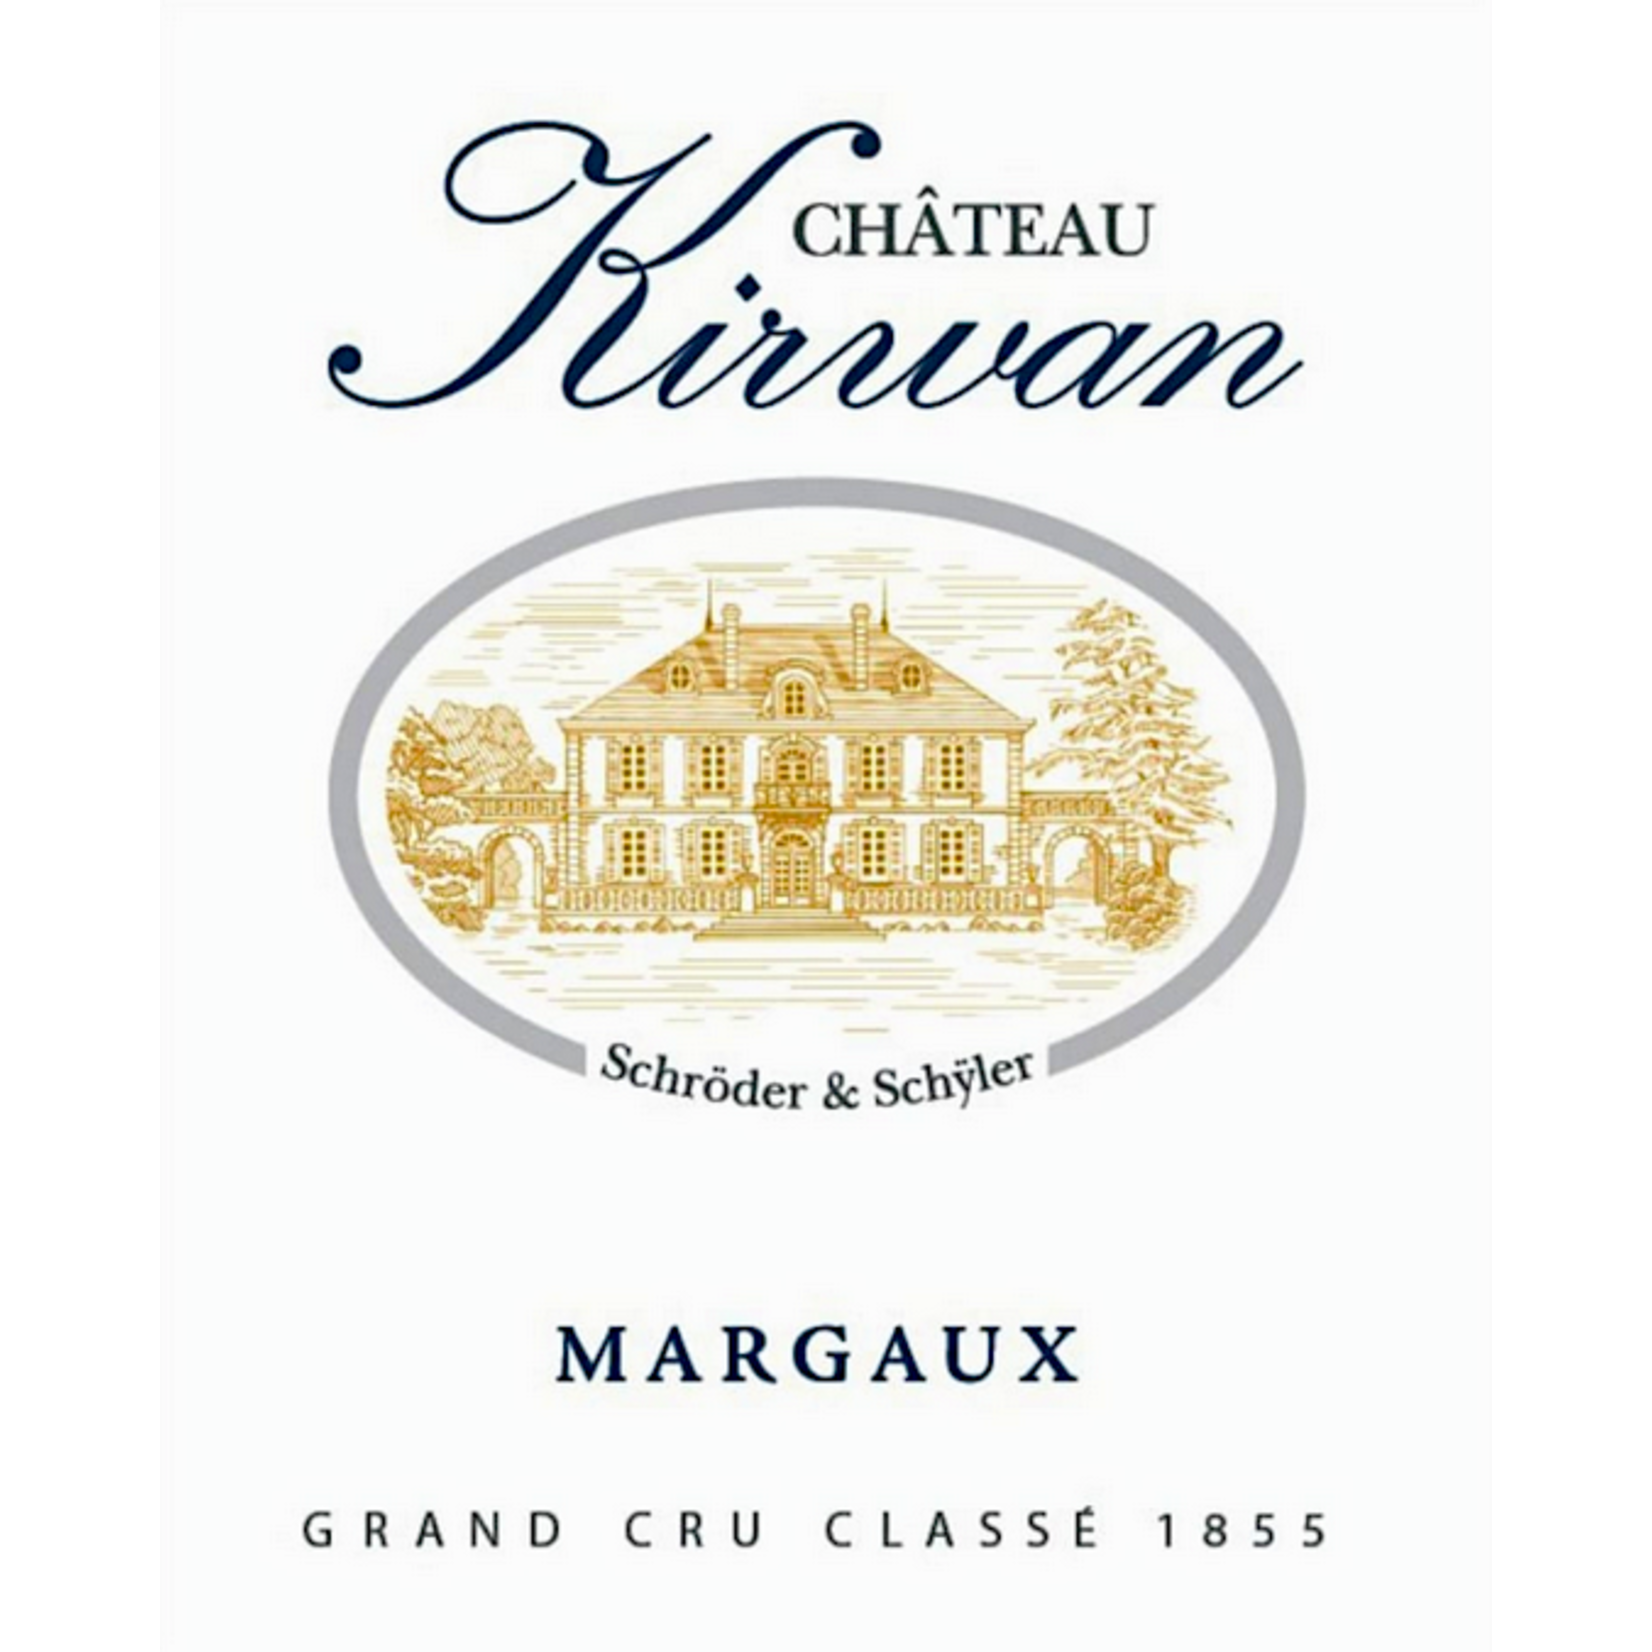 Chateau Kirwan Chateau Kirwan Margaux 2020  Grand Cru